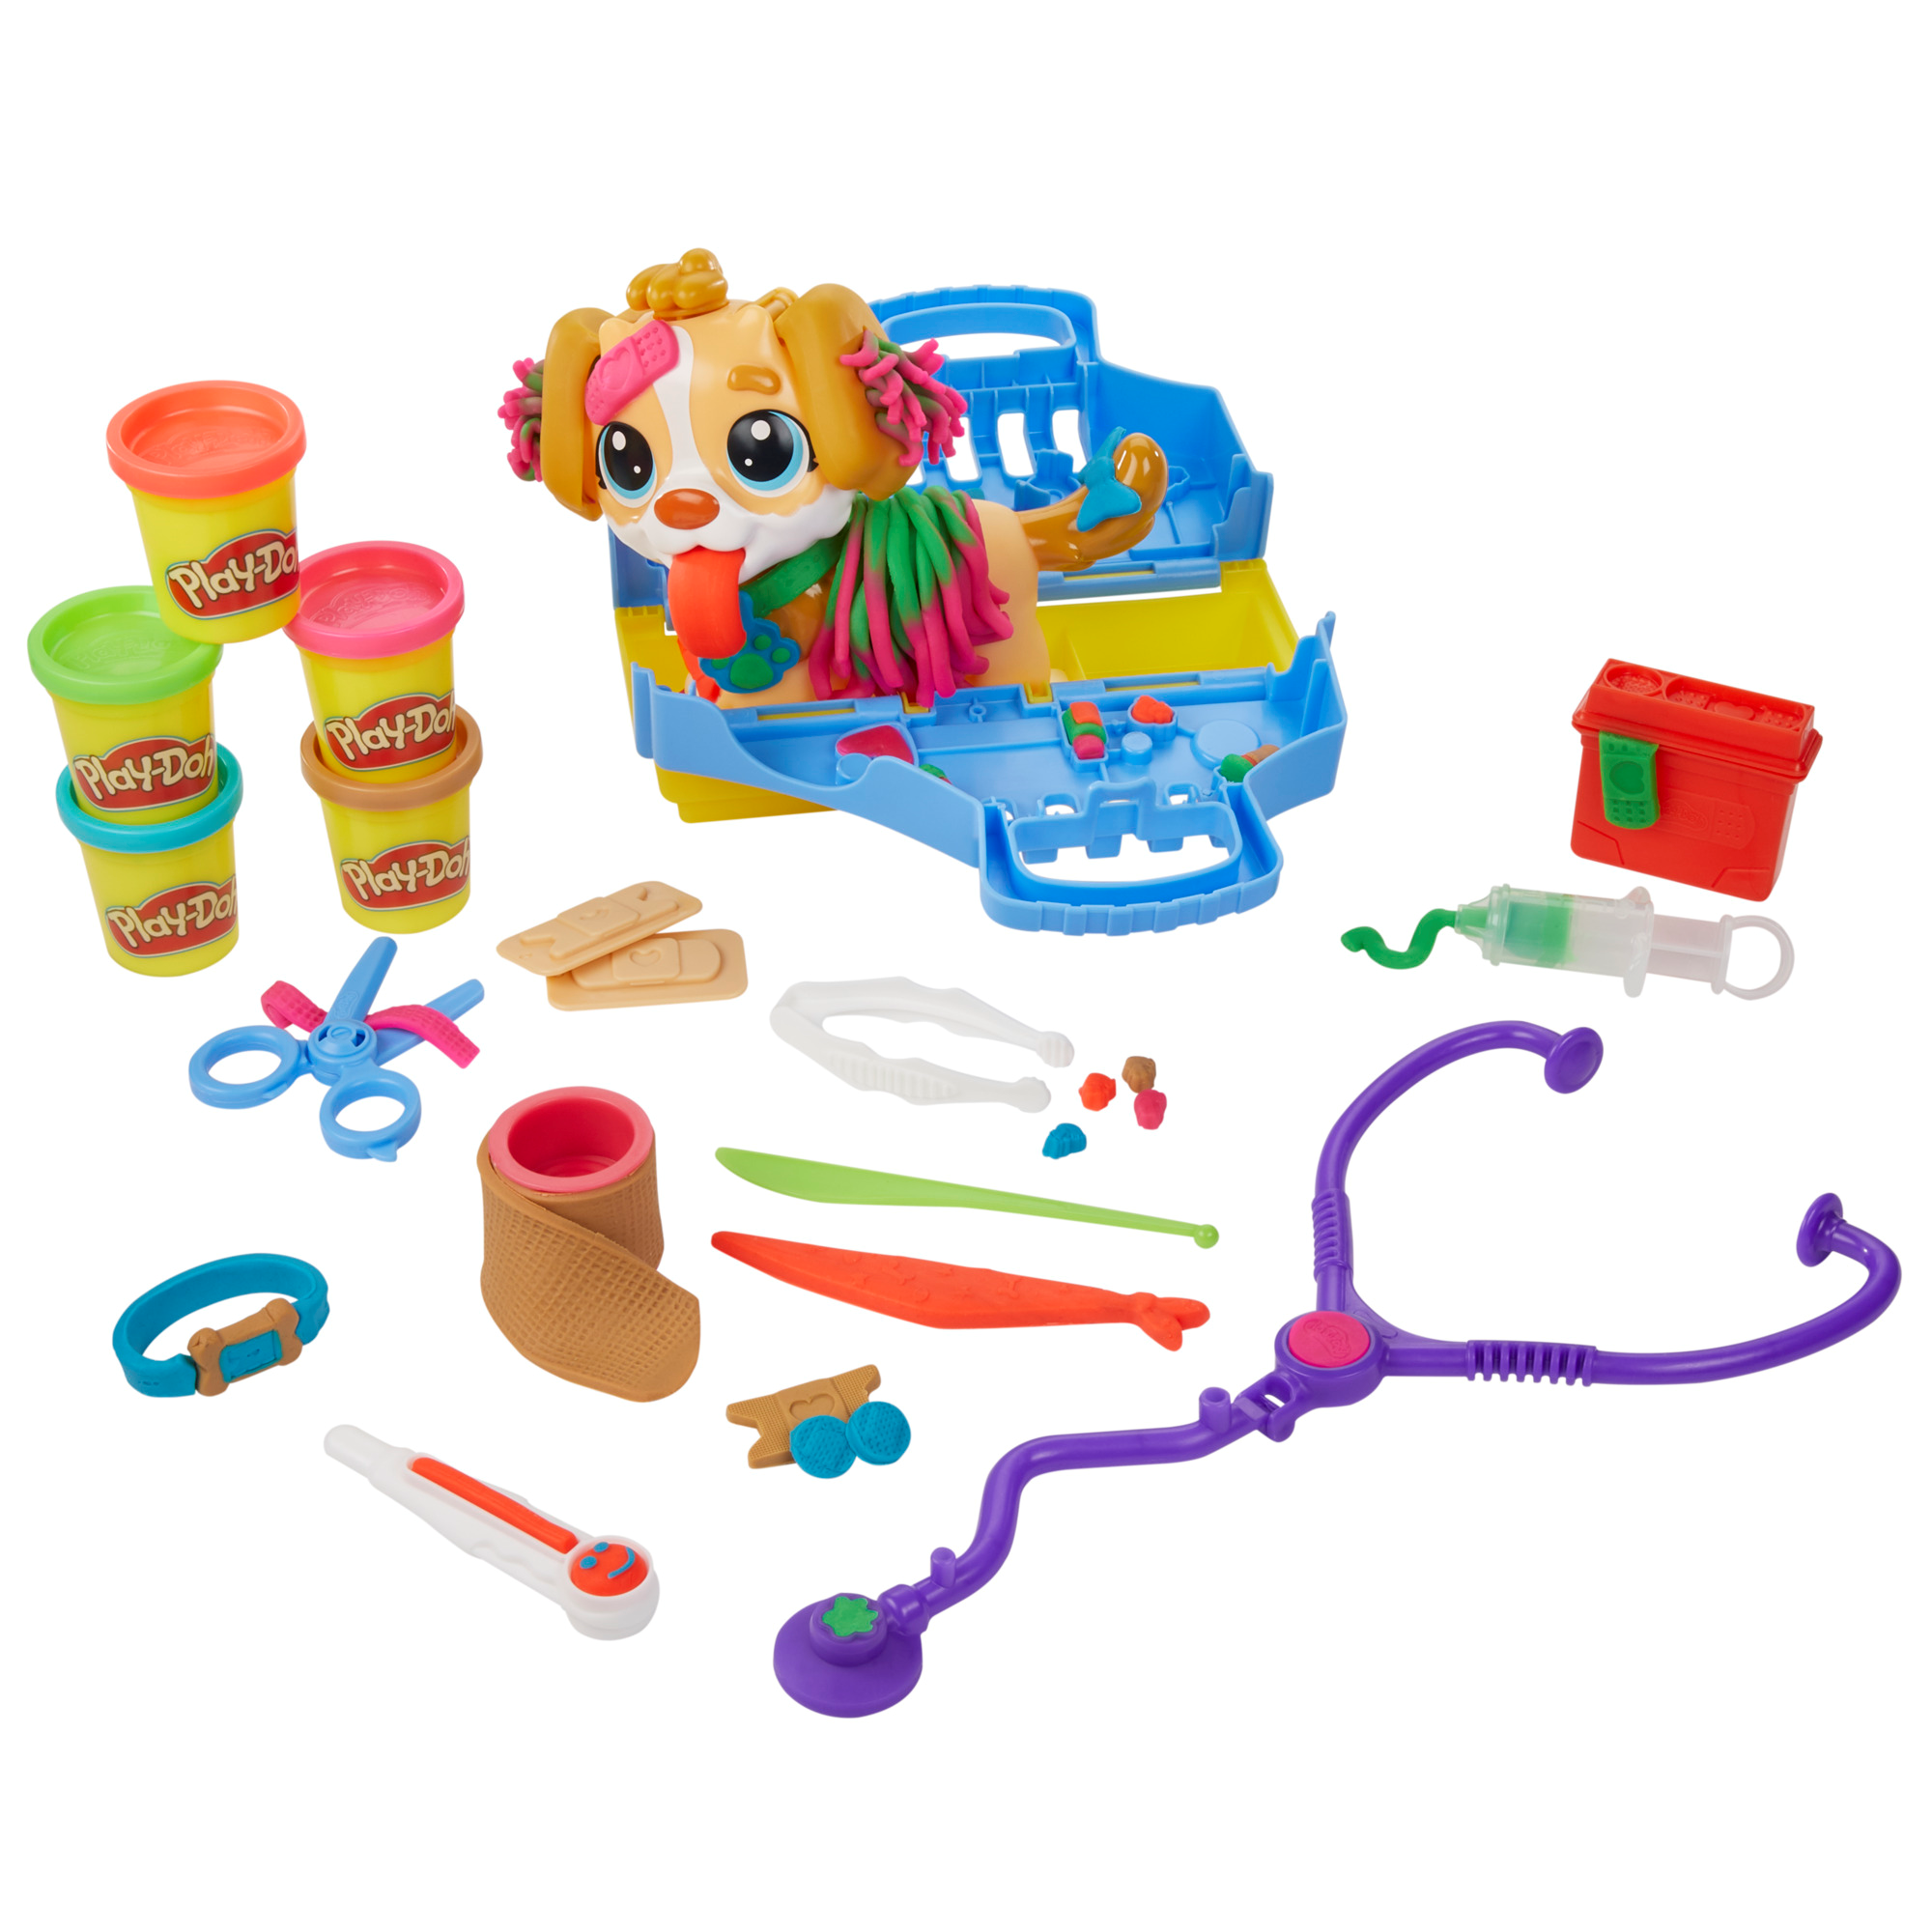 Play-doh - set da veterinario, playset con 10 strumenti e 5 colori di pasta da modellare atossica, cane giocattolo per bambini dai 3 anni in su - PLAY-DOH